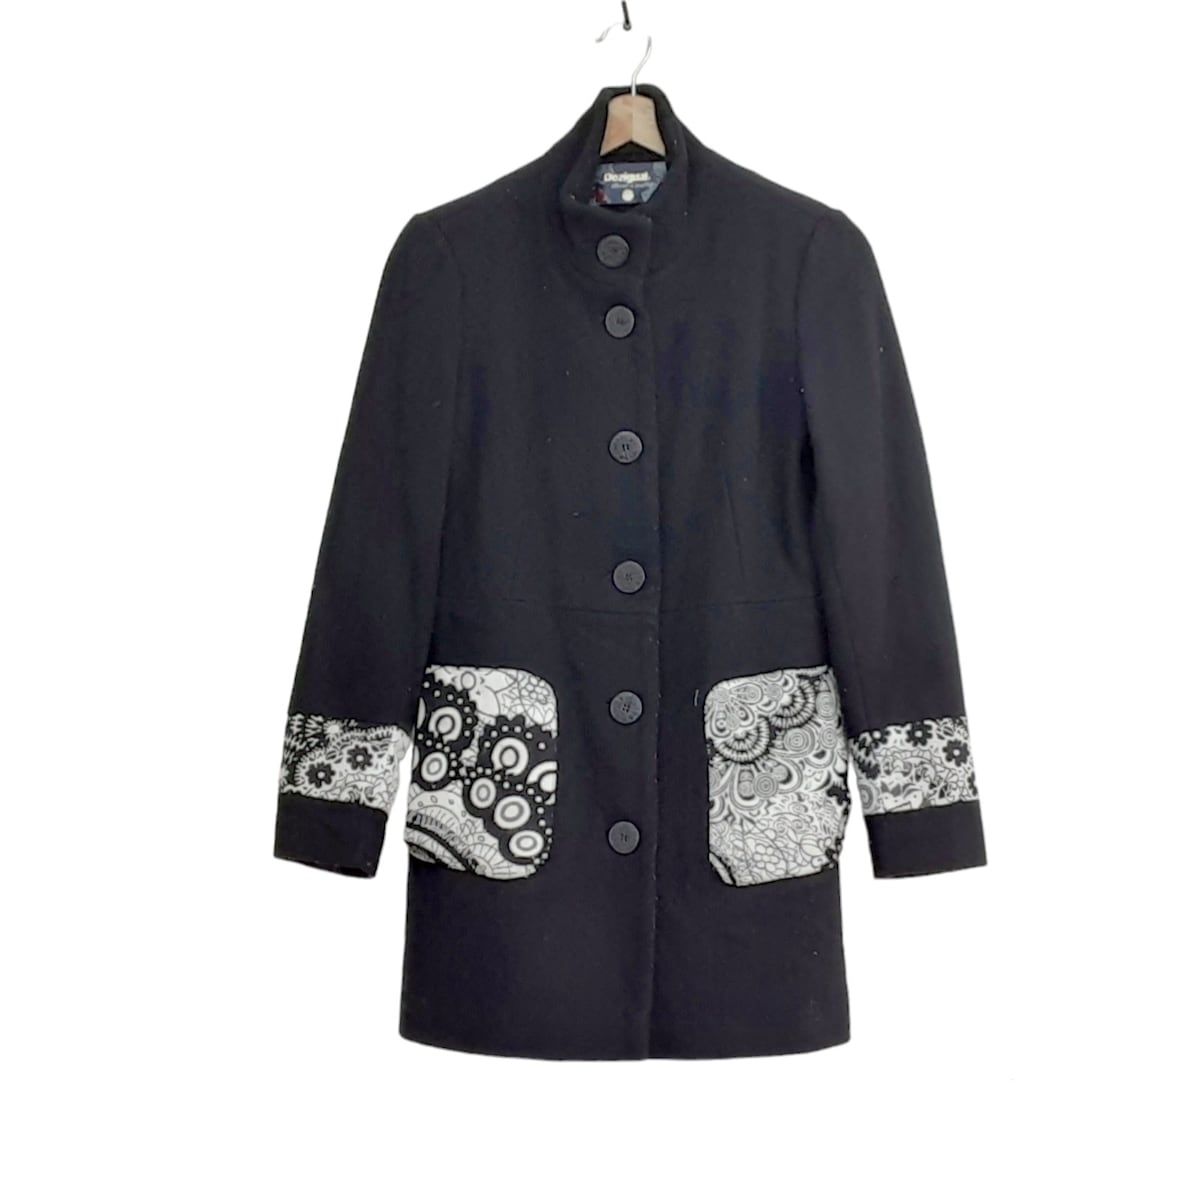 Desigual(デシグアル) コート サイズ36 M レディース美品 - 黒×白 長袖 